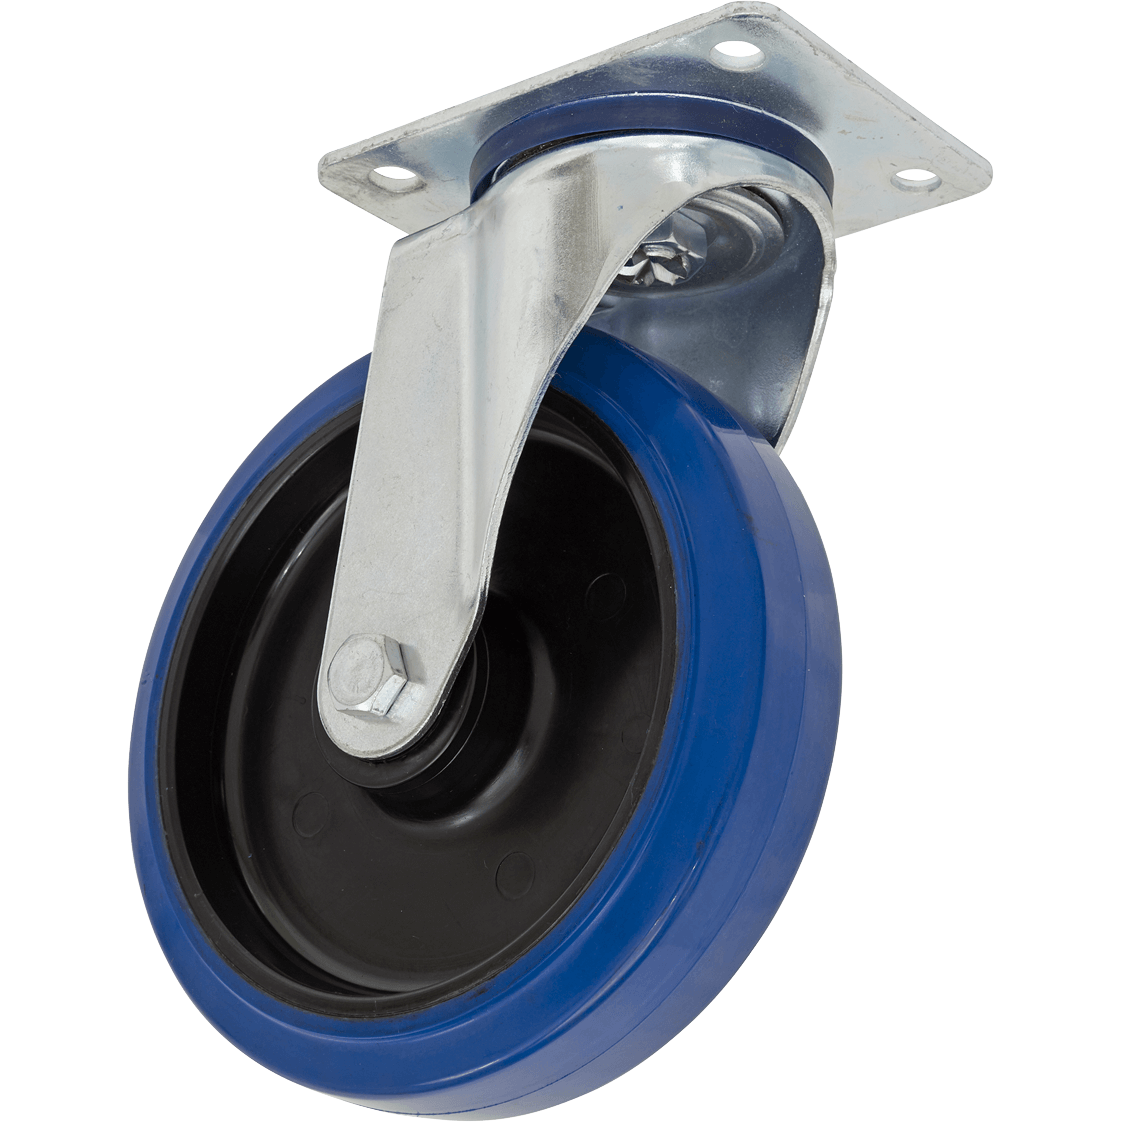 Sealey Heavy-Duty Blue Elastic Rubber Swivel Castor Wheel 200mm